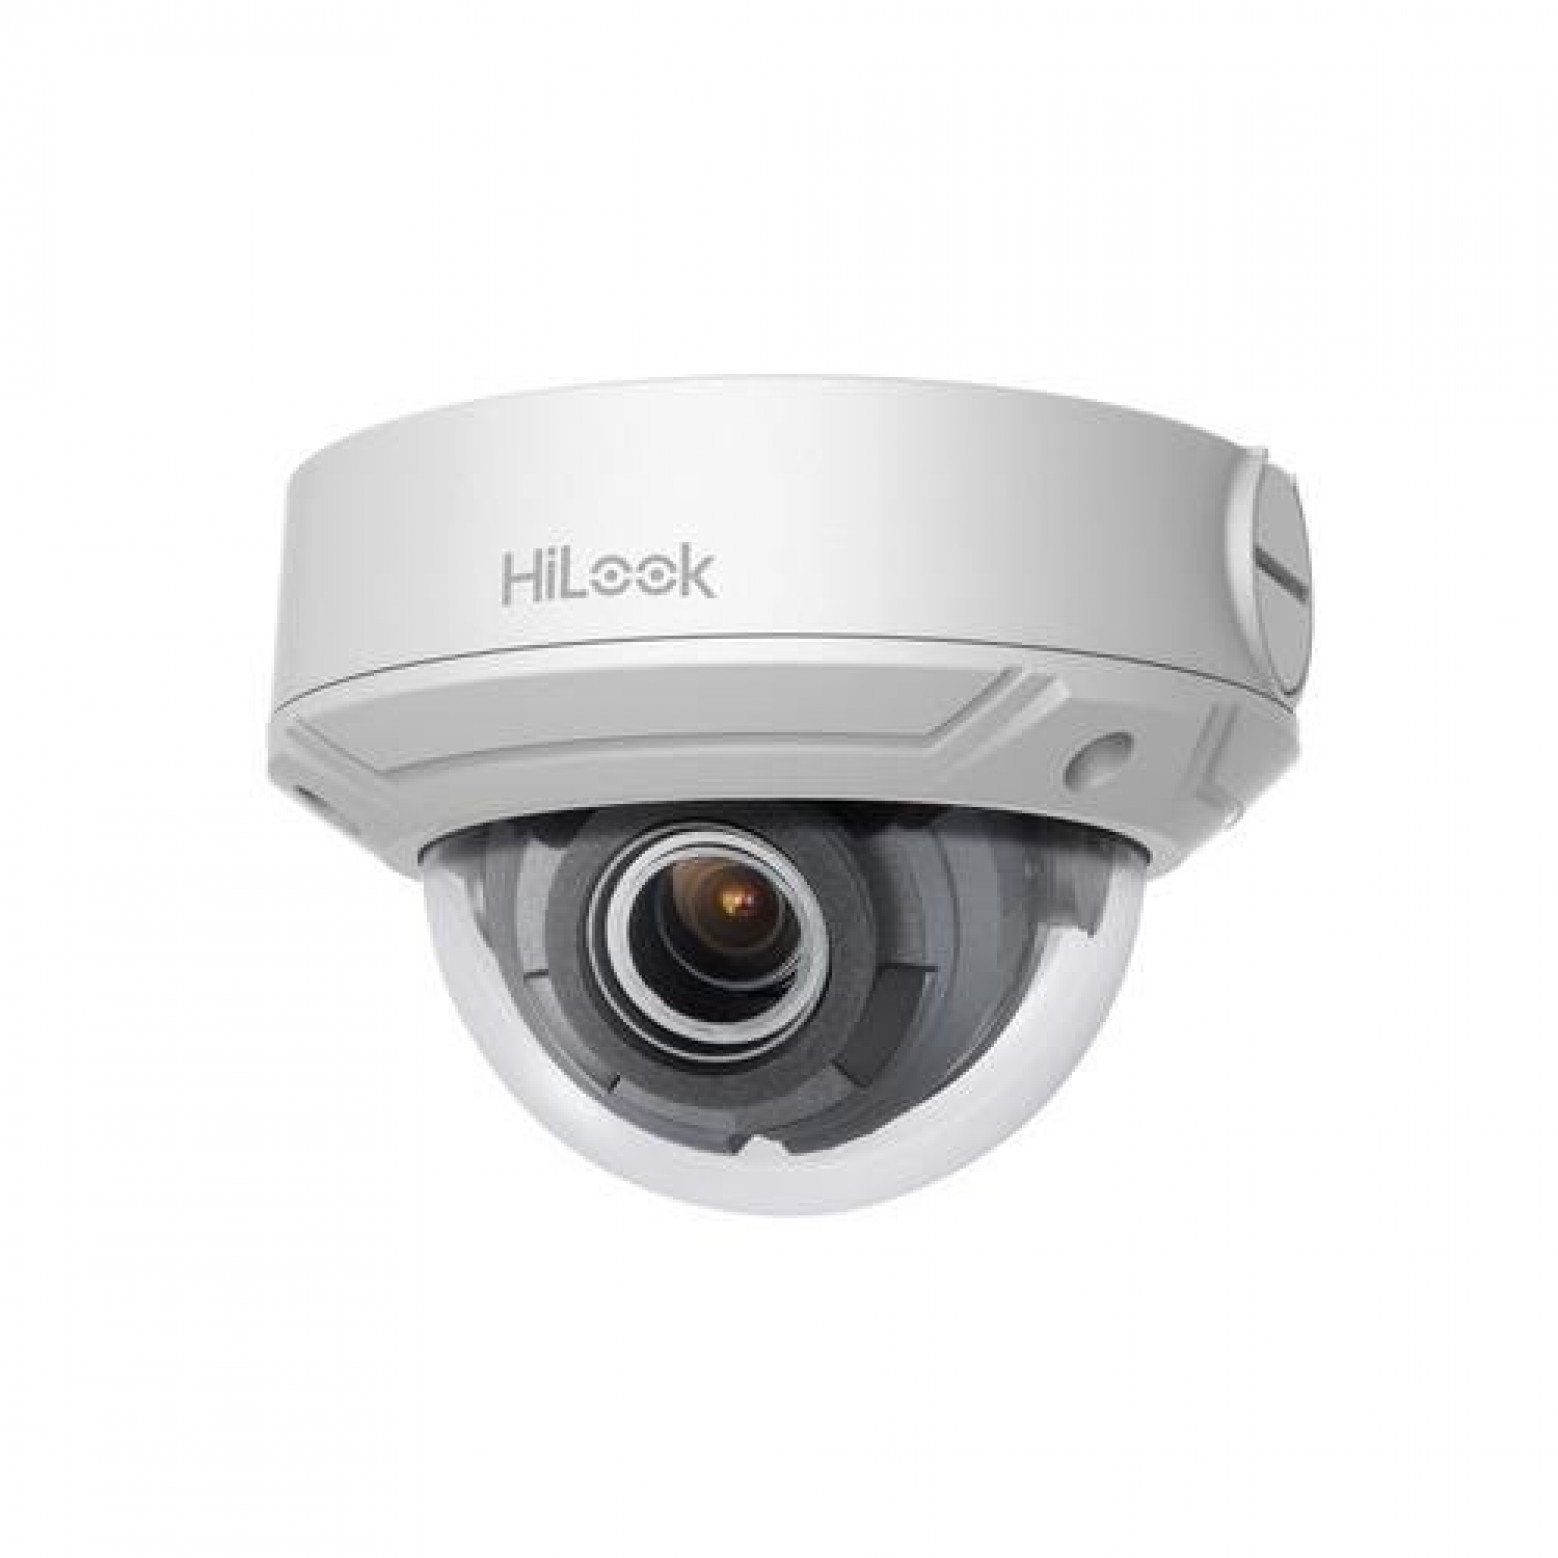 HiLook IPC-D640H-Z Varifocal 2.8 - 12mm 4 megapixel dome camera